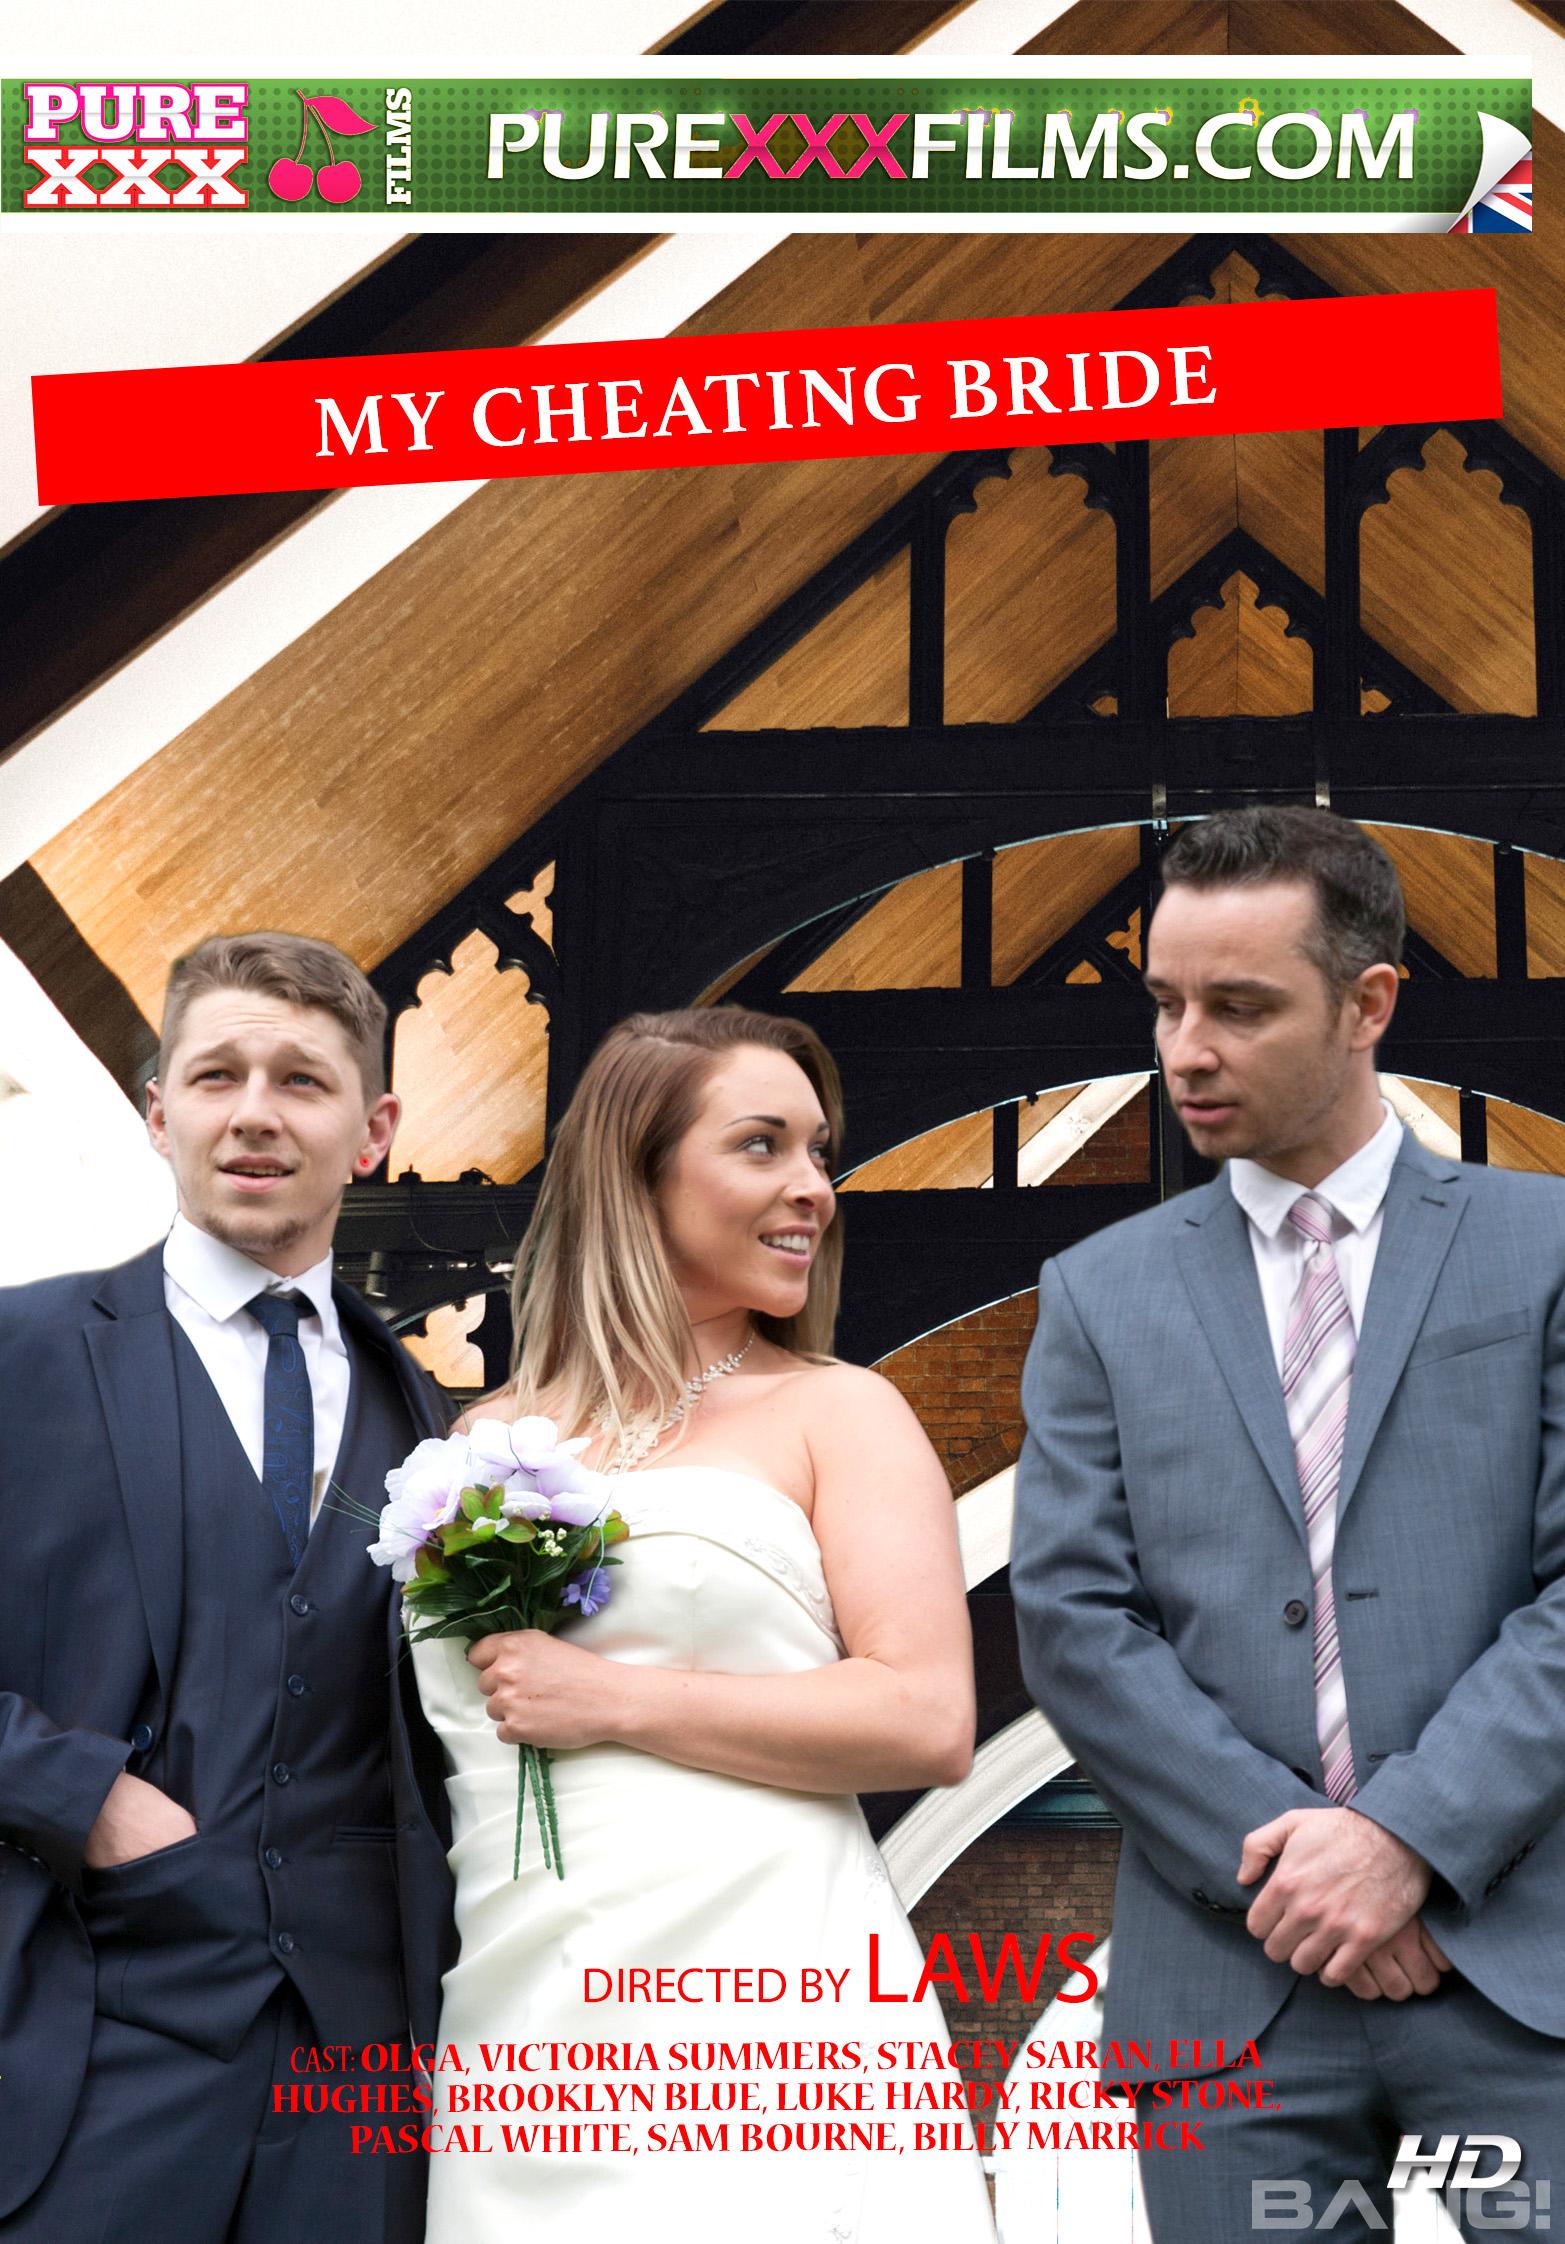 Wedding Cheating - My Cheating Bride | bang.com